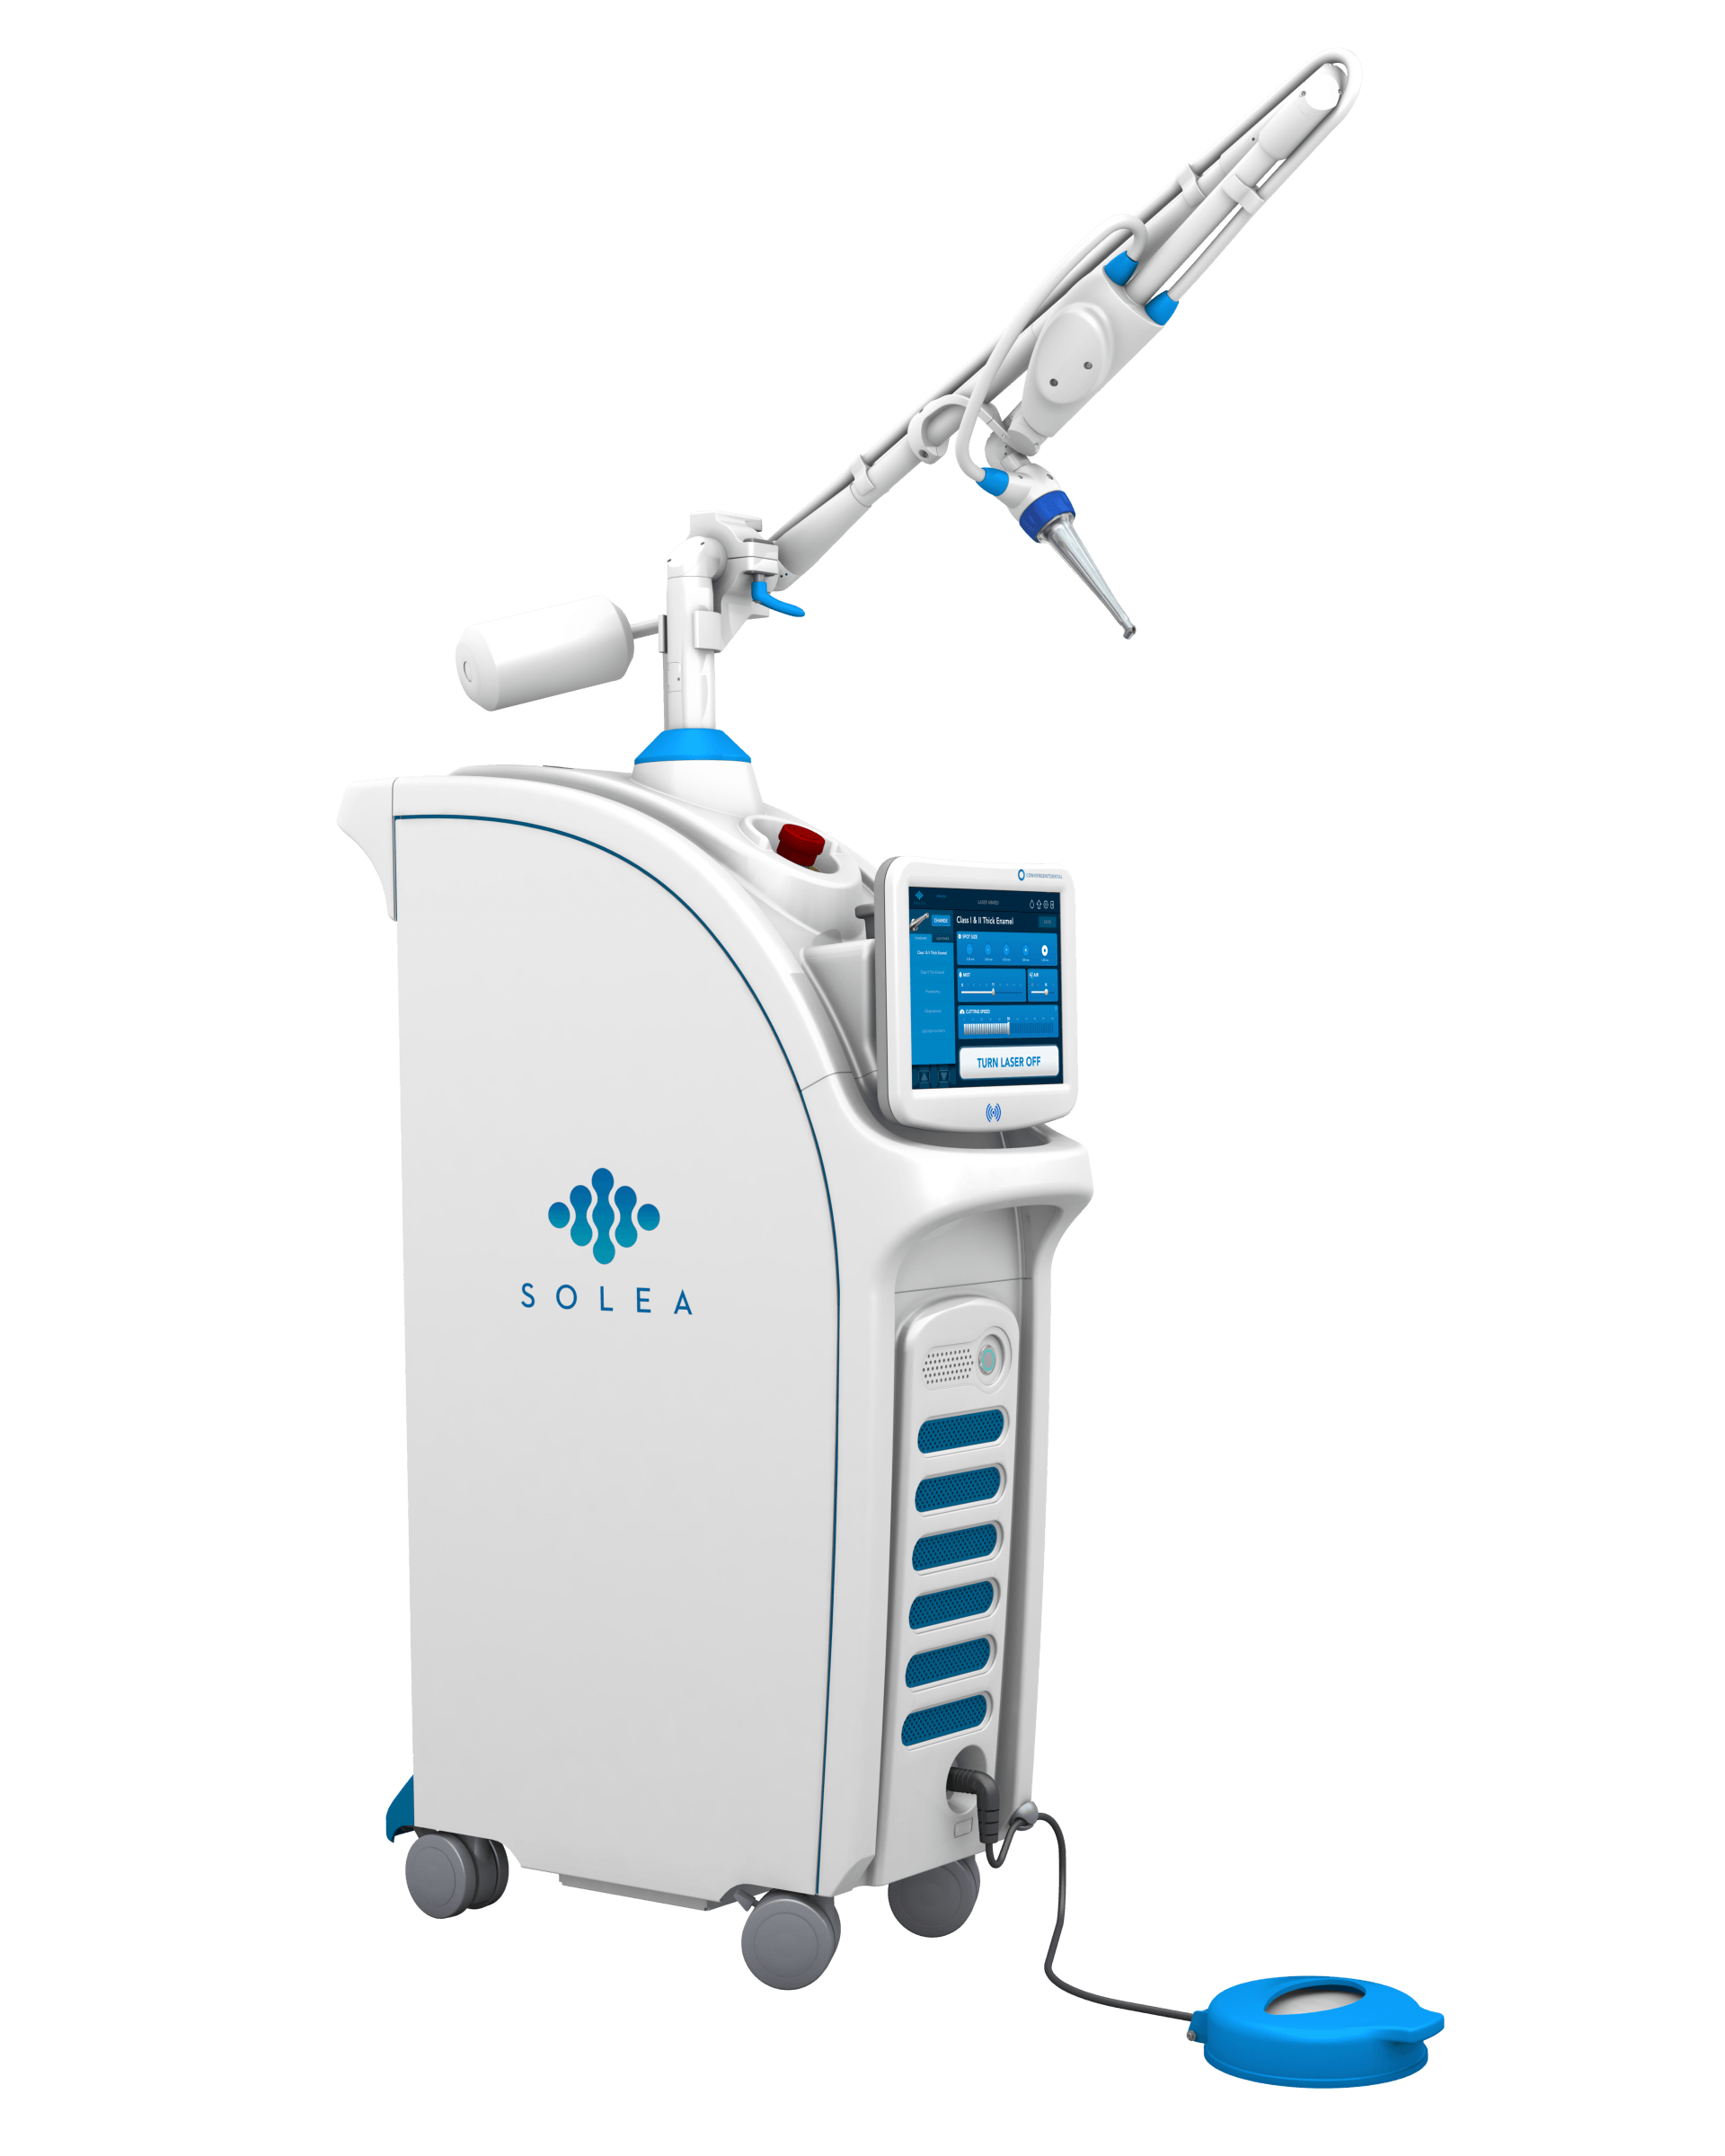 CEREC System technology for dental impressions